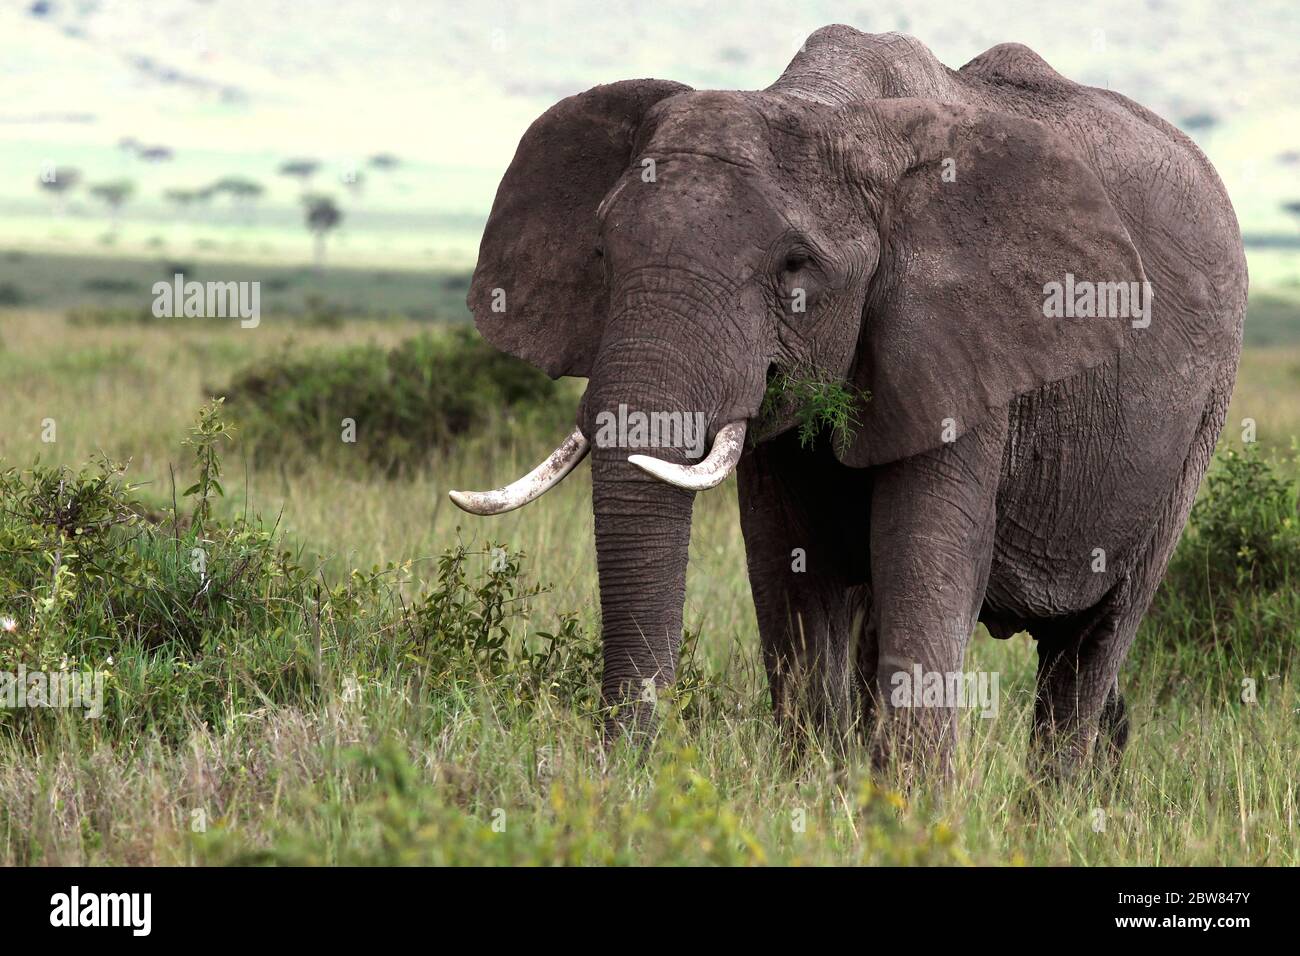 Un vieux taureau d'éléphant avec de grandes défenses se saisit paisiblement dans la savane kenyane et a une touffe verte dans sa bouche Banque D'Images